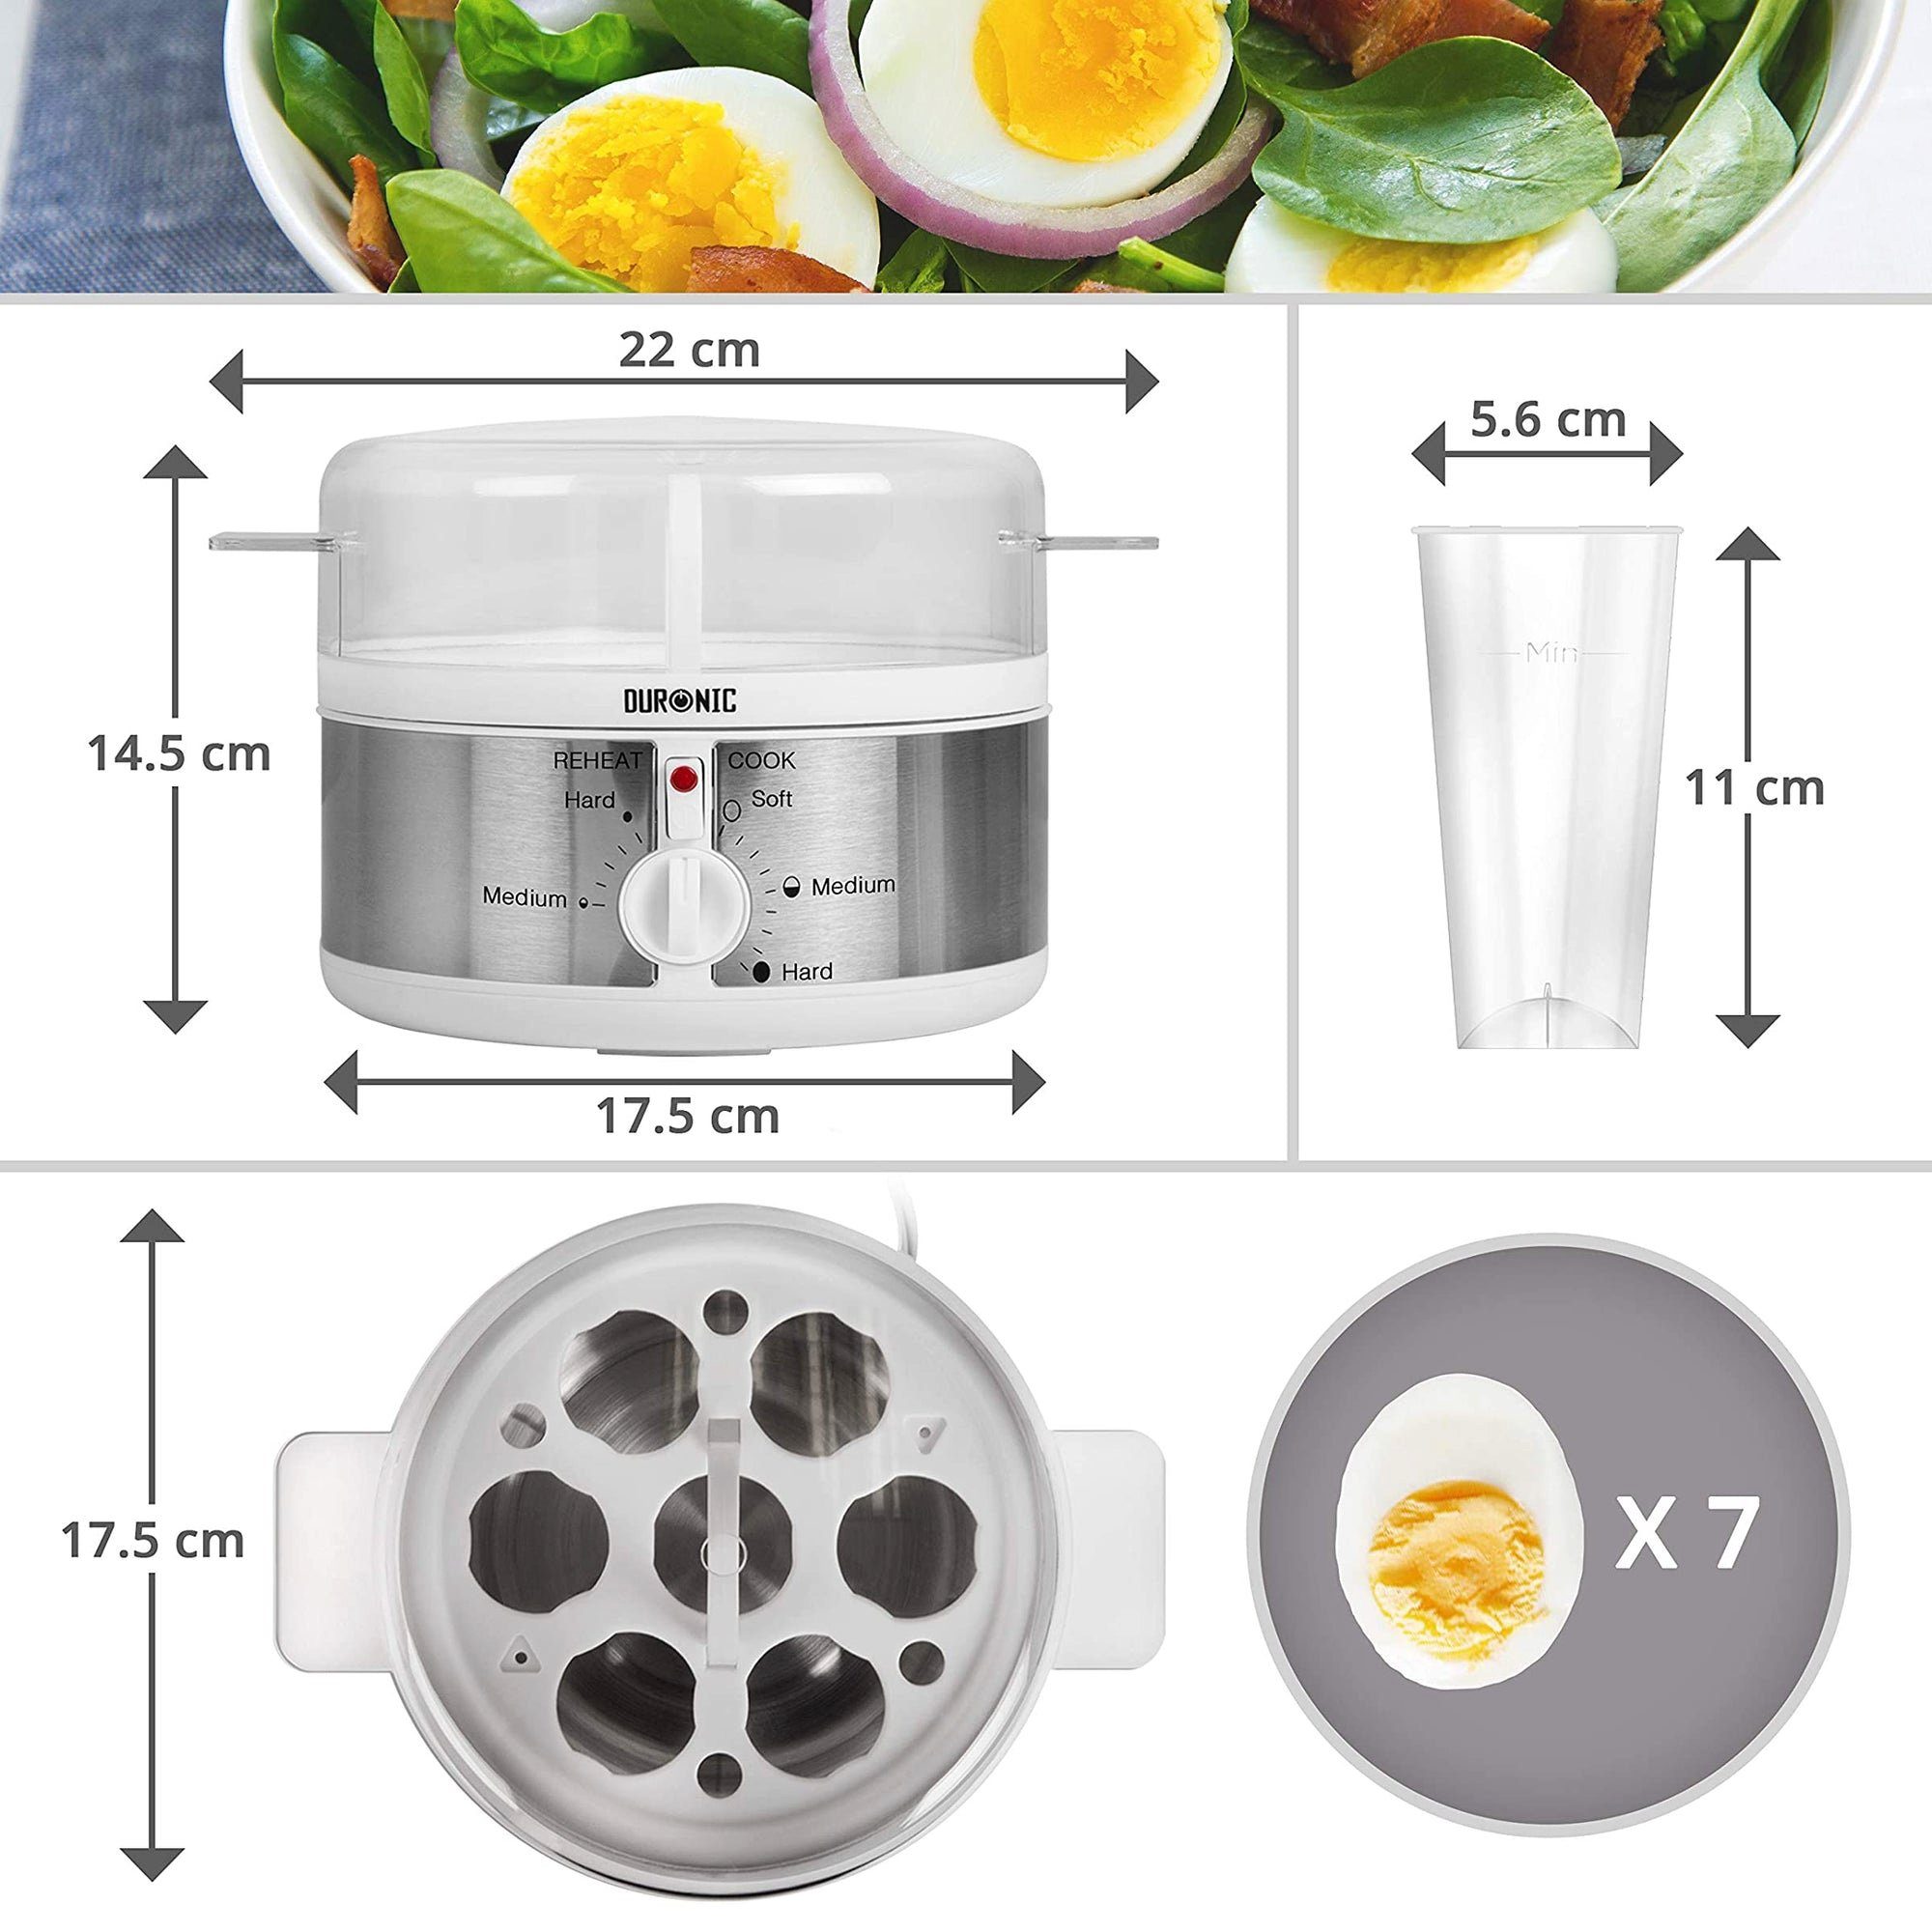 Härtegradeinstellung bis Duronic Eierkocher, Eier, Timer und EB35 1 Eierkocher, für 7